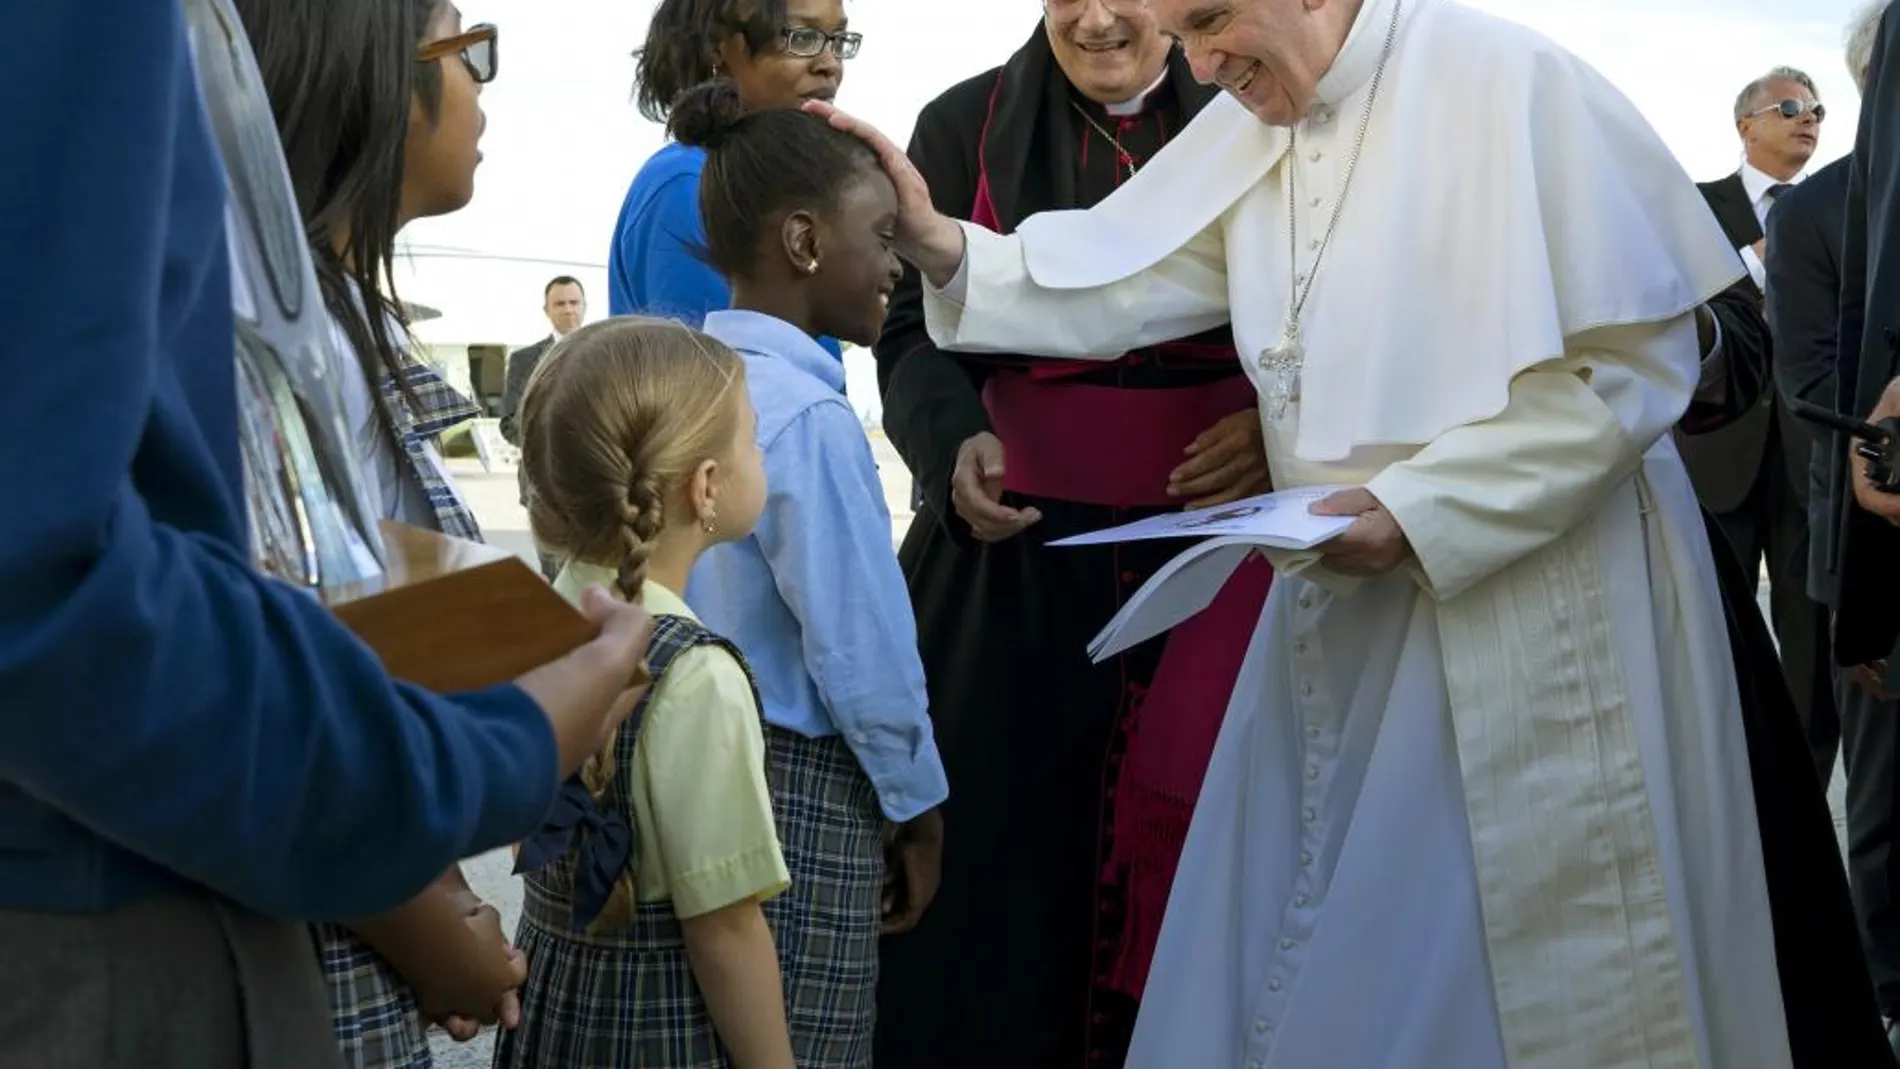 El papa Francisco recibido en el aeropuerto John Fitzgerald Kennedy (JFK). Le esperaban un grupo de niños, a los que un sonriente Francisco se acercó a saludar